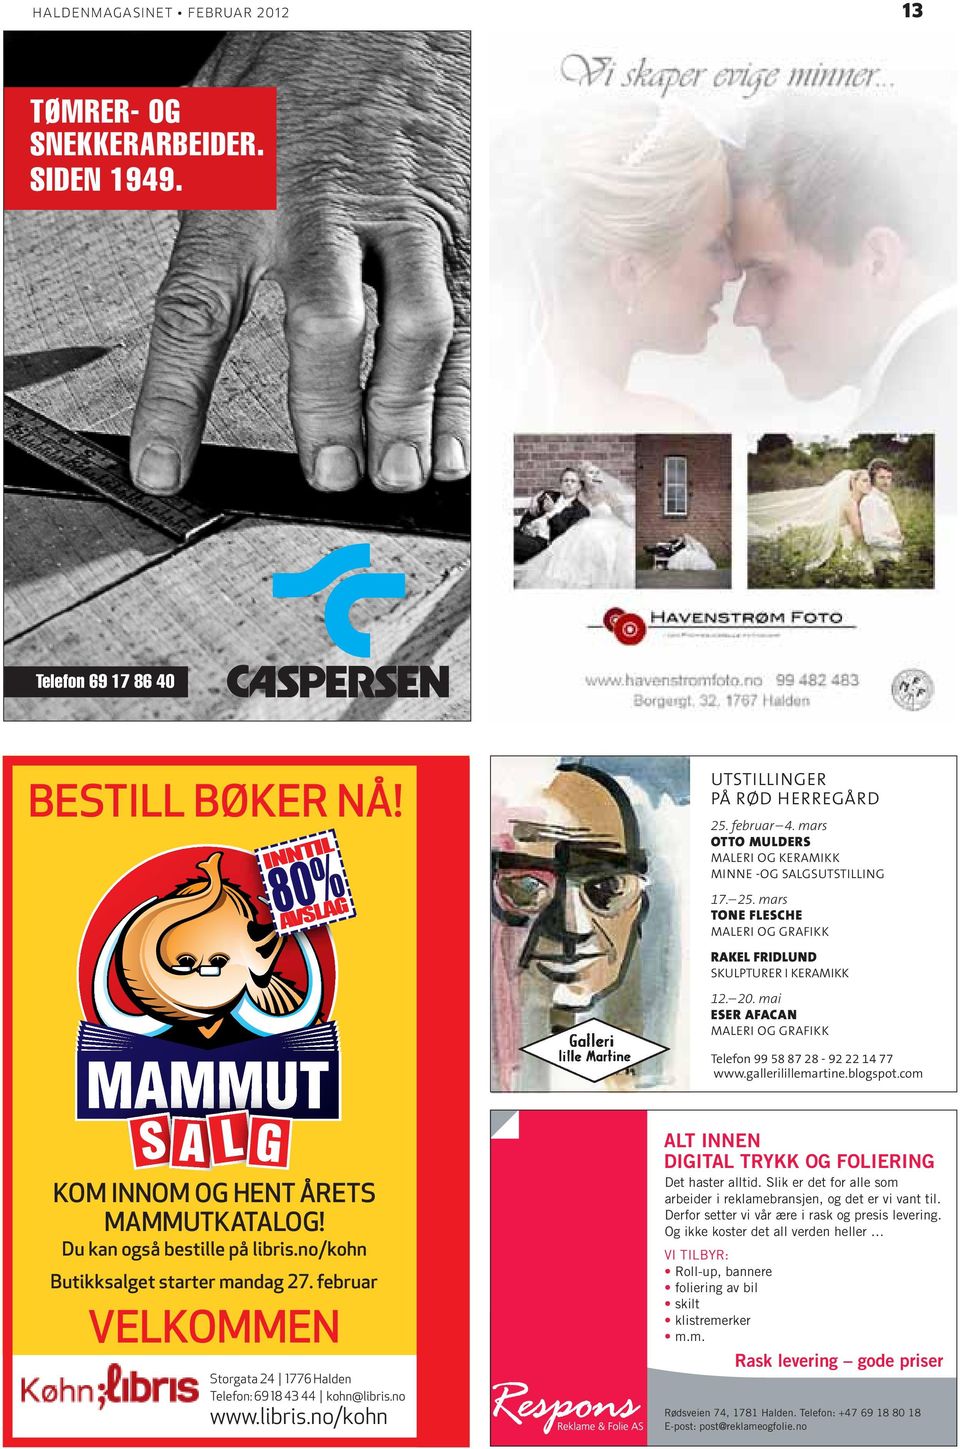 mai ESER AFACAN Maleri og grafikk Telefon 99 58 87 28-92 22 14 77 www.gallerilillemartine.blogspot.com Kom innom og hent årets Mammutkatalog! Du kan også bestille på libris.